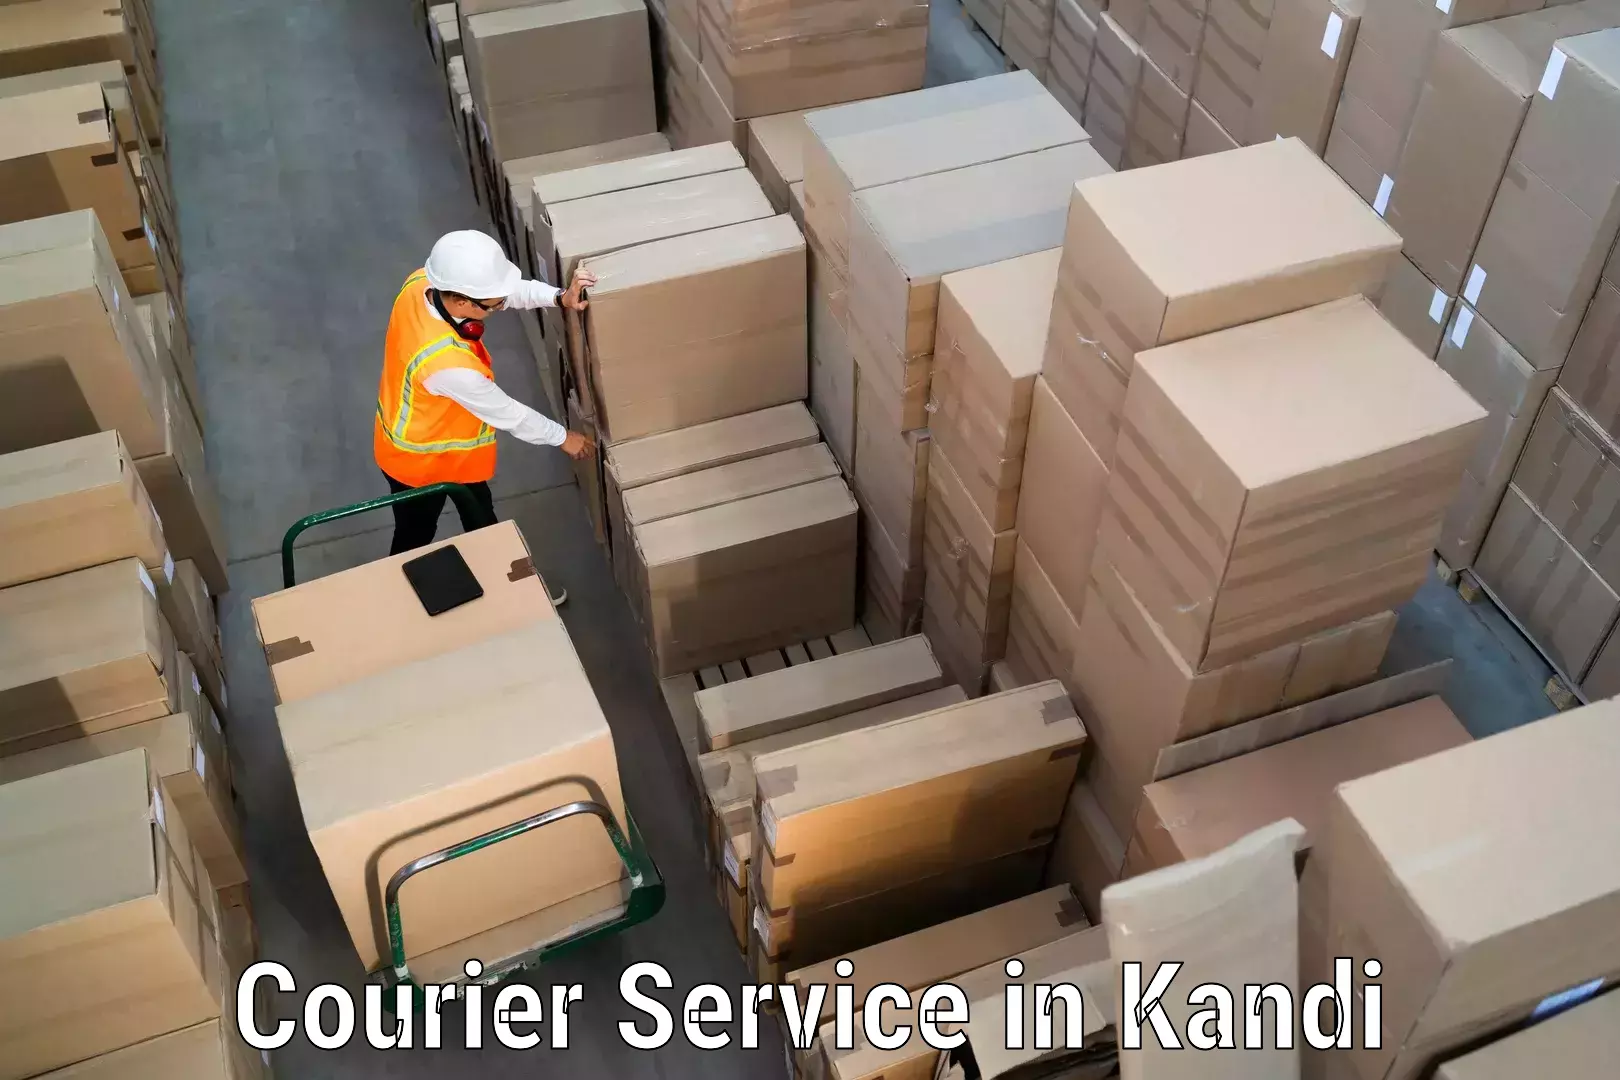 Express package handling in Kandi